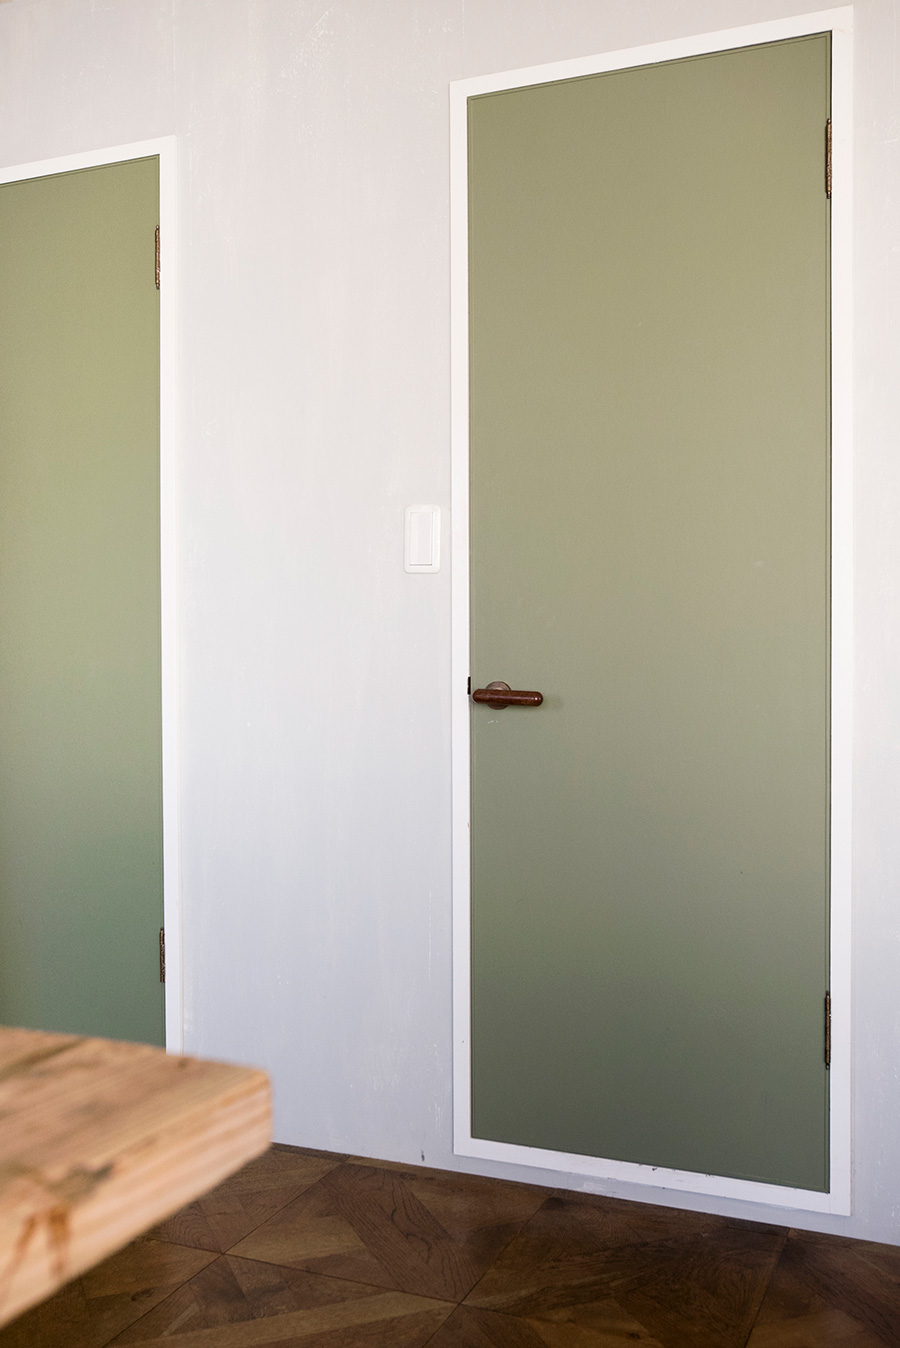 バスルームとトイレのまわりの壁はムラのあるグレーに。ドアはモスグリーンでペイント。